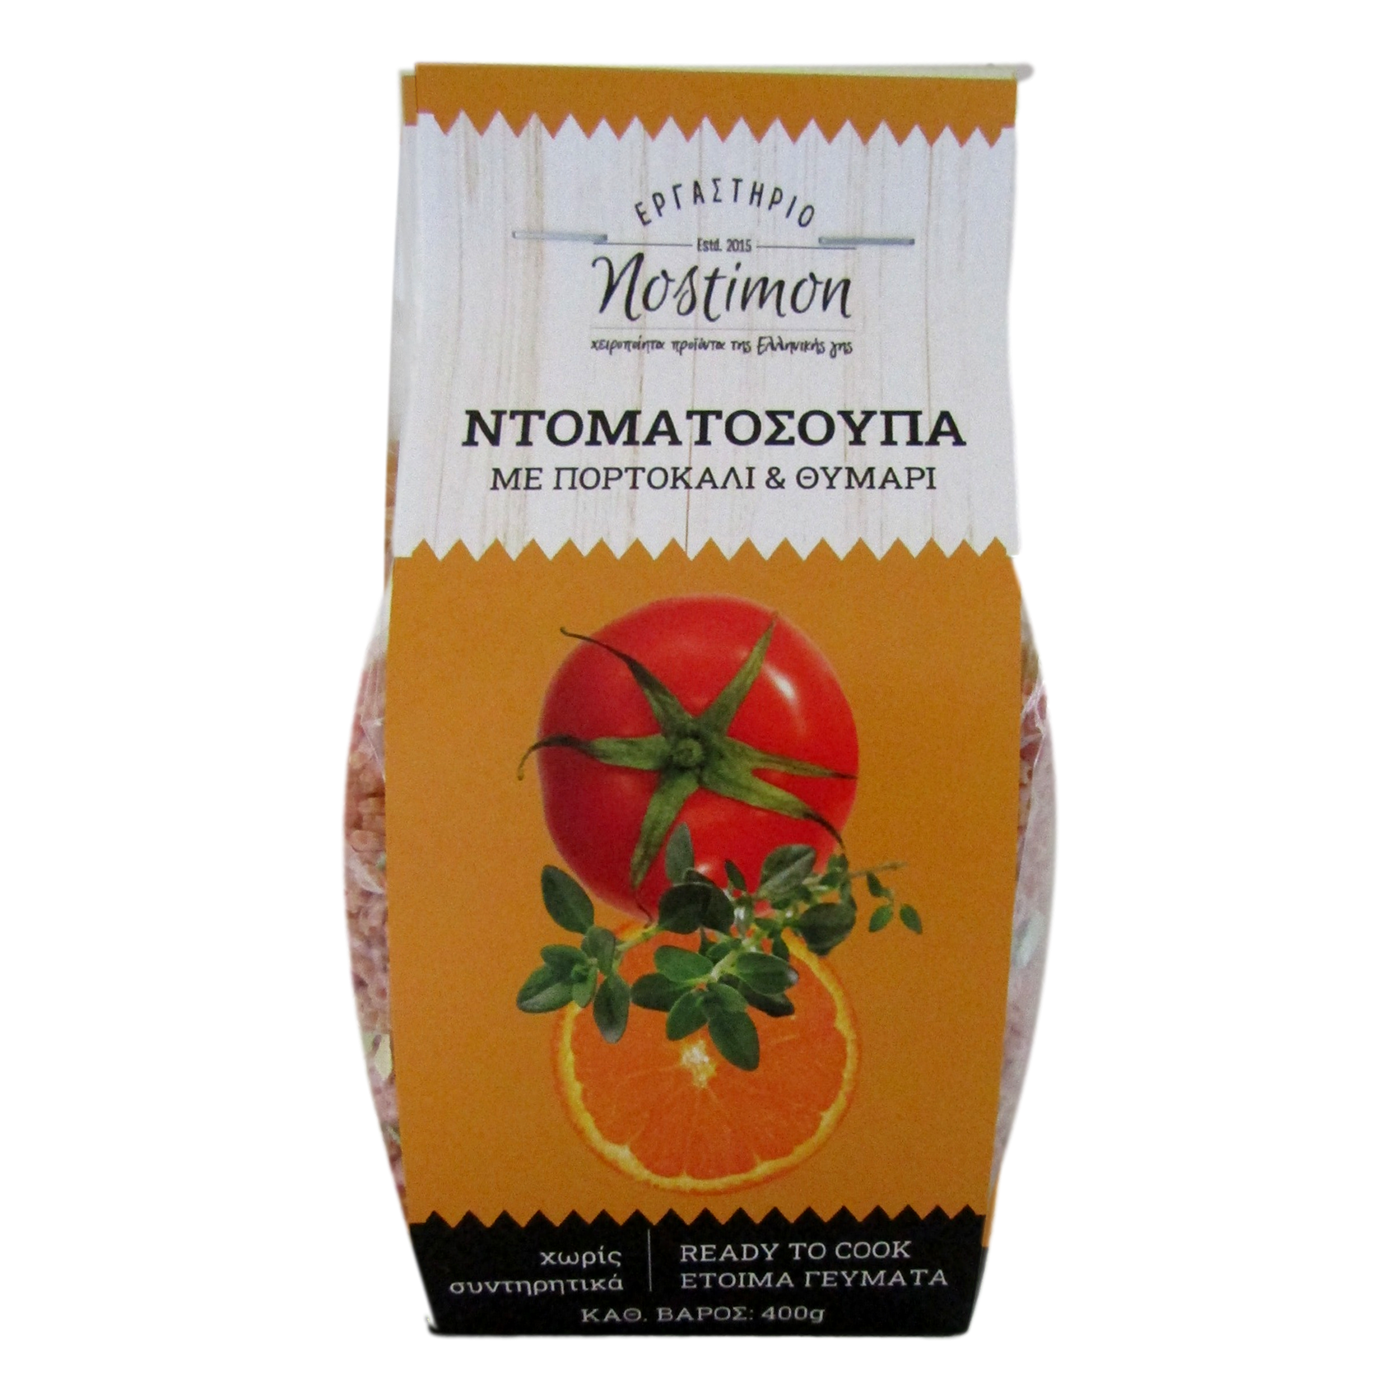 Ντοματόσουπα με πορτοκάλι & θυμάρι "nostimon" 400 g